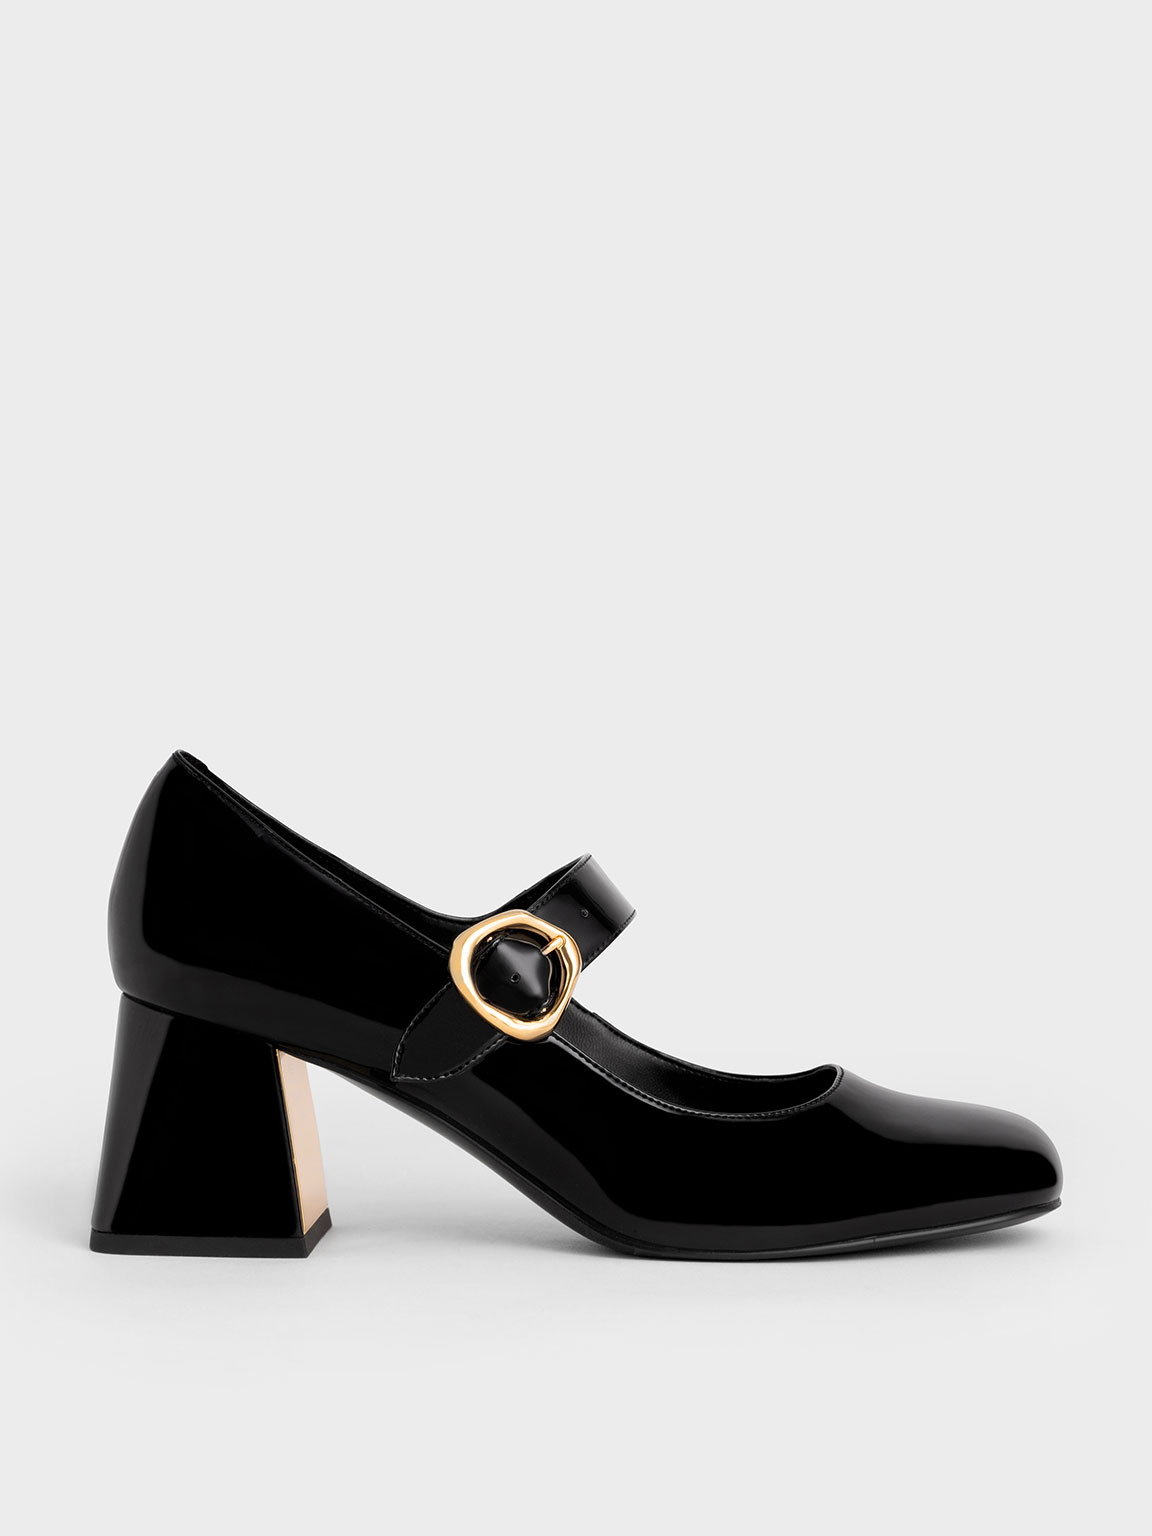 Unique Vintage Black Patent Leatherette Mary Jane Block Heels